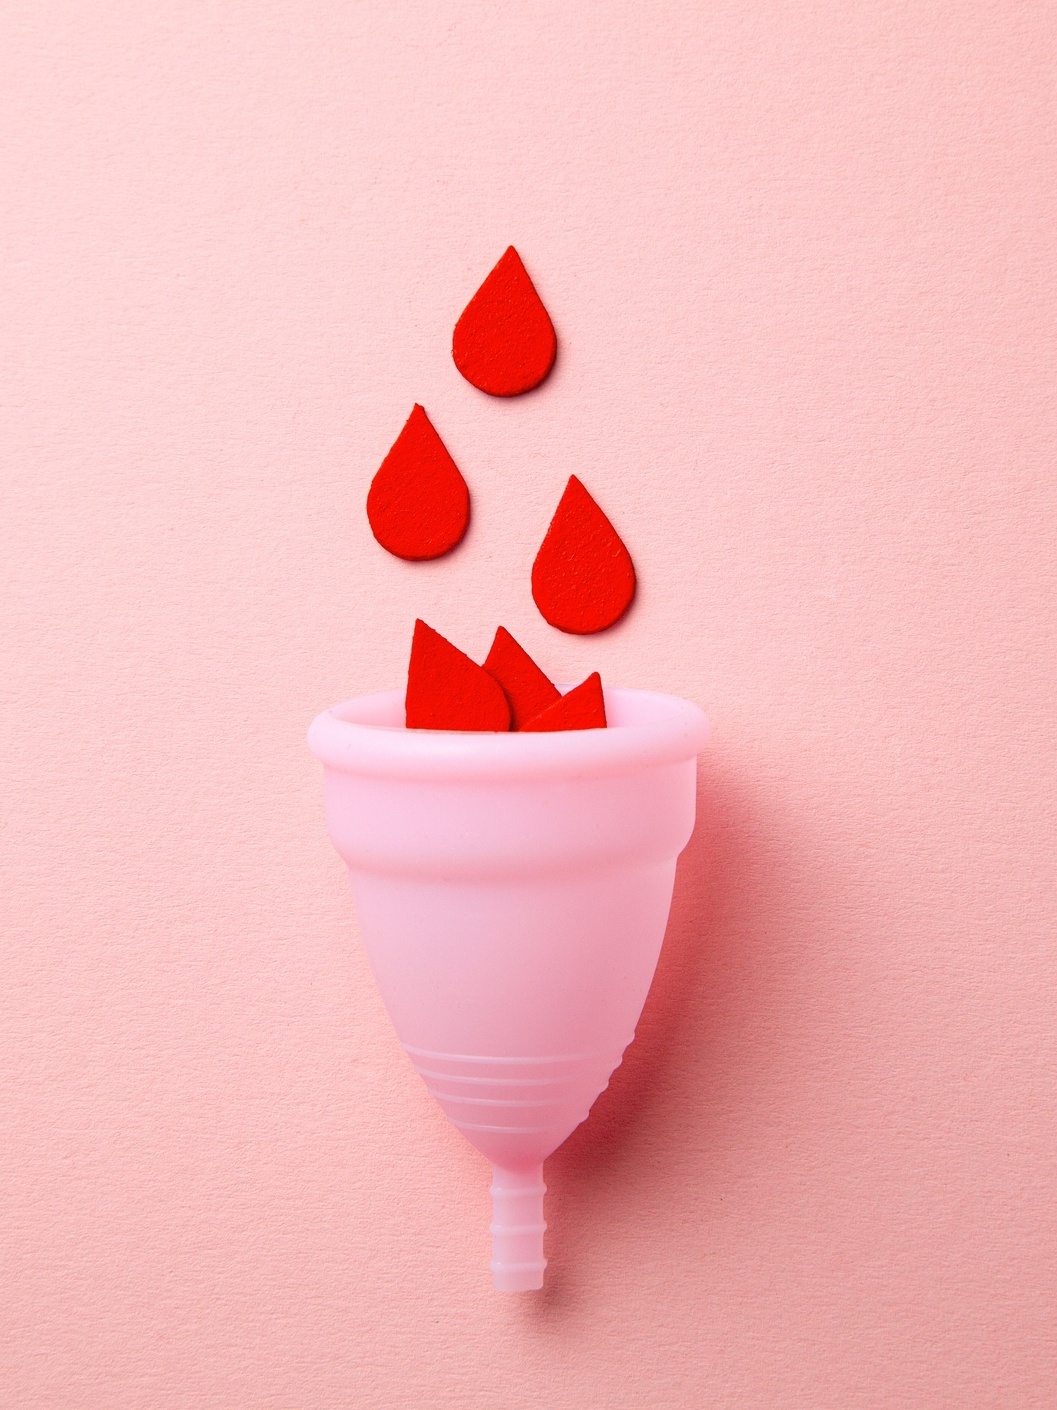 Cor da menstruação: o que significa cada uma - Blog Inciclo